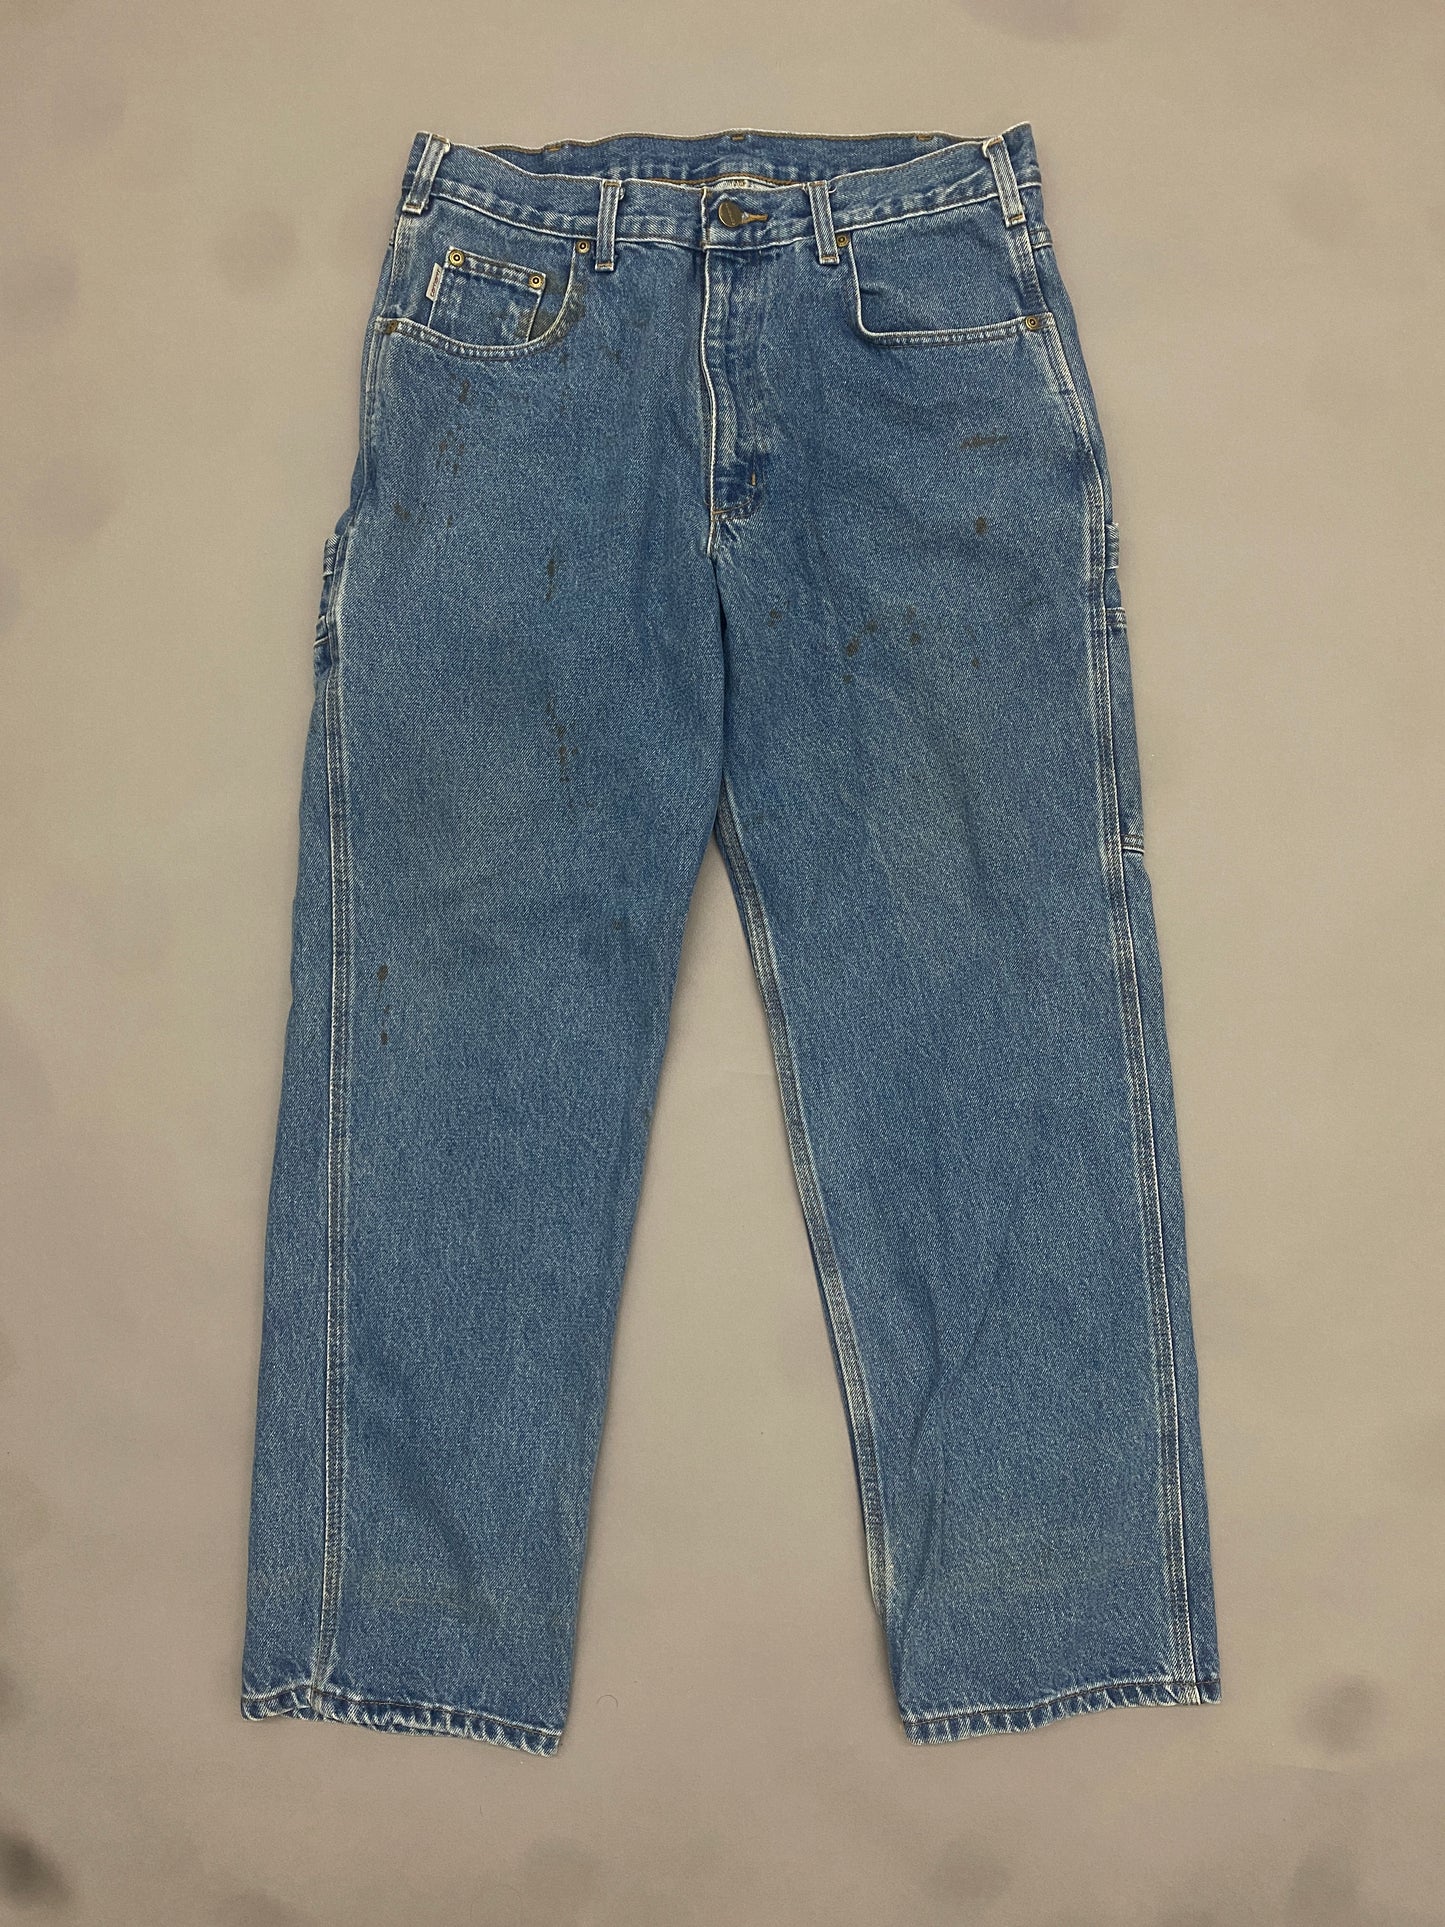 Carhartt Carpenter Jeans - 34 x 30